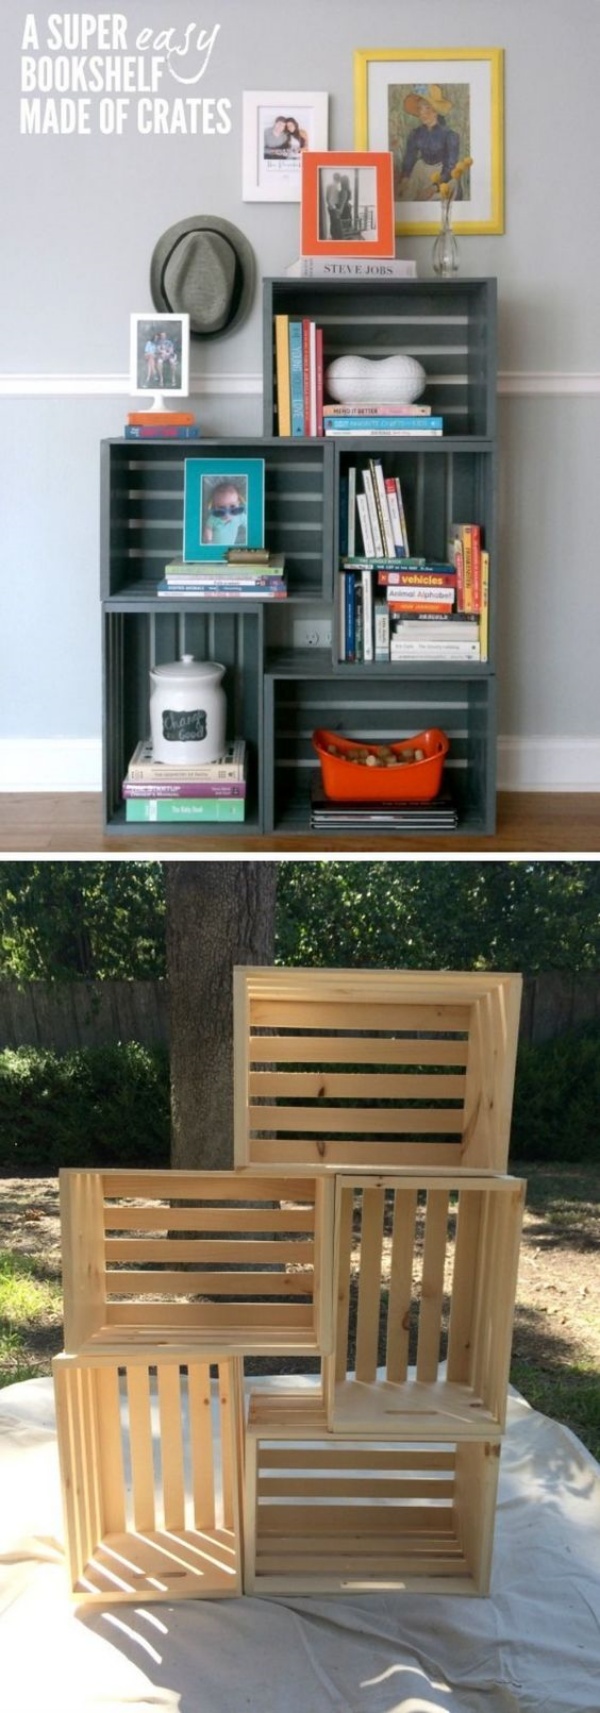 Easy DIY Bookshelf Ideas For Bookworms